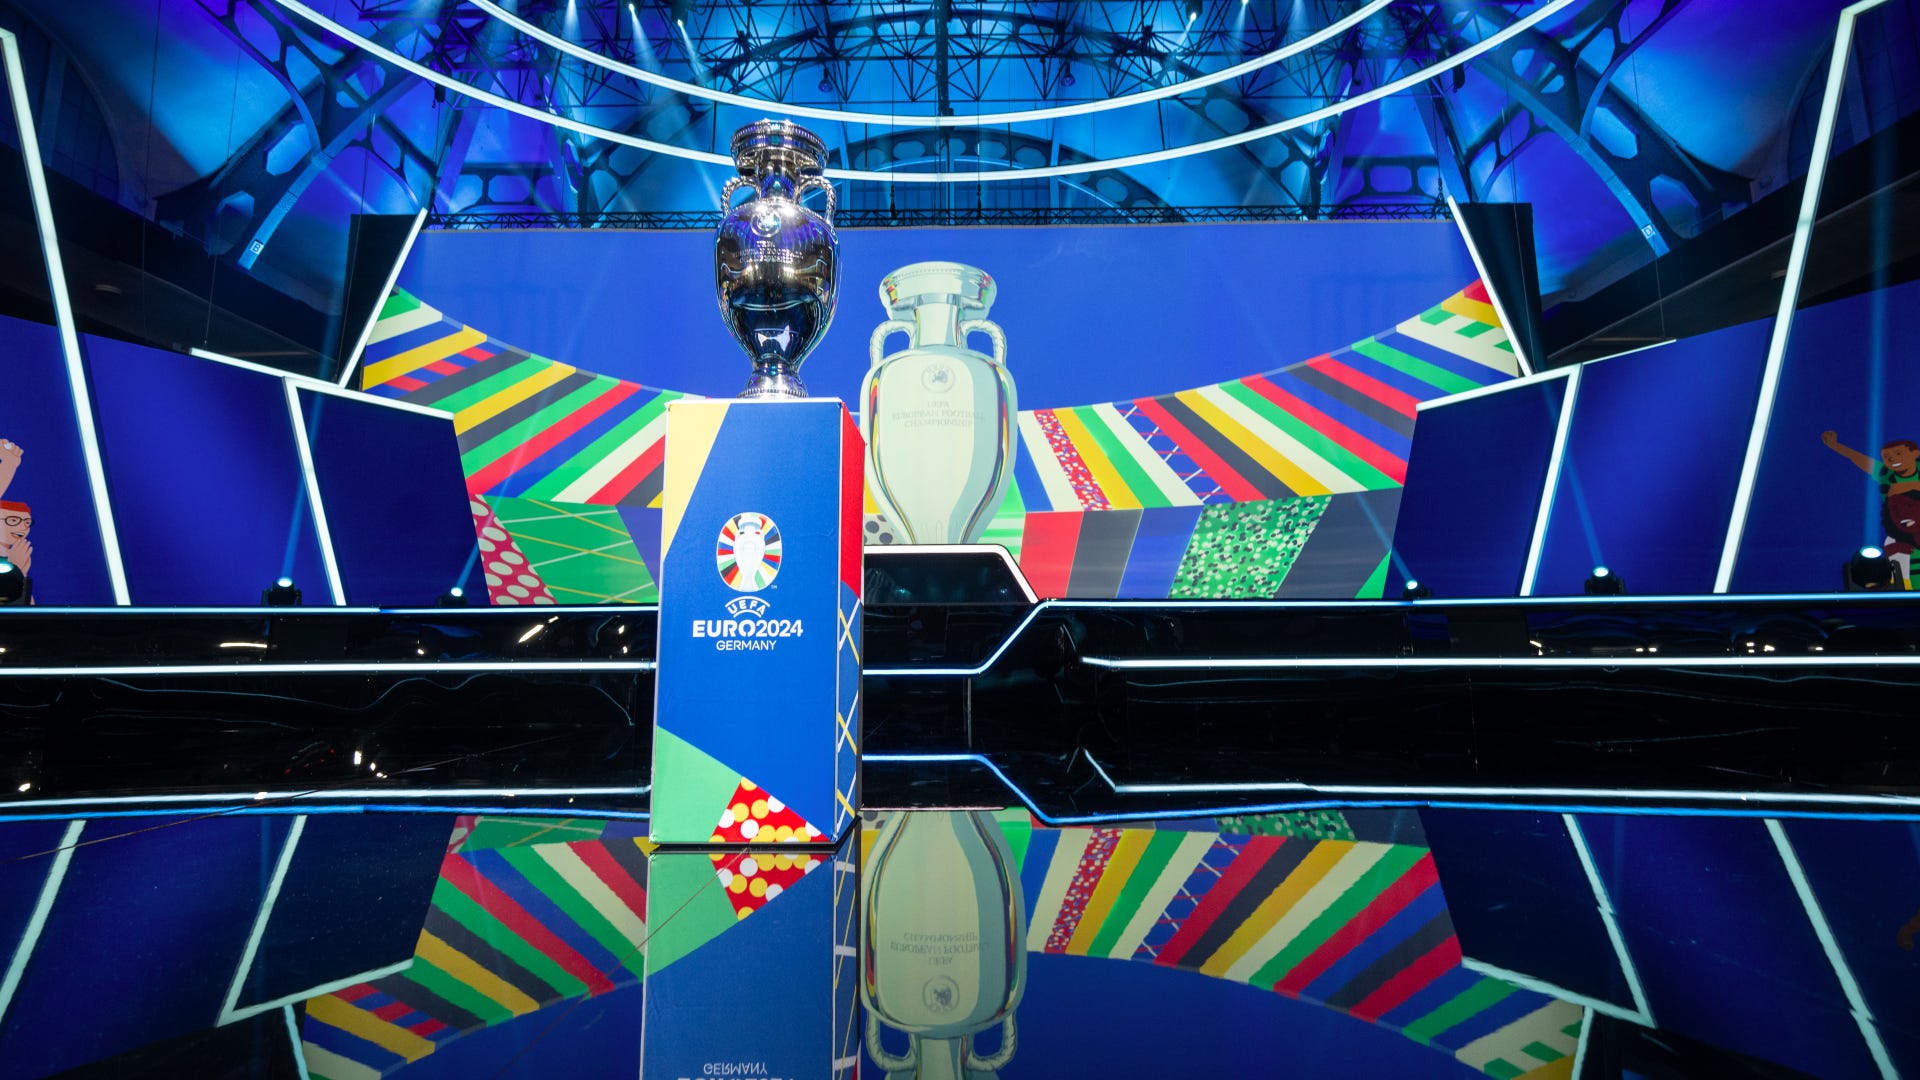 Definidos dos grupos das Eliminatórias para a Eurocopa 2024!